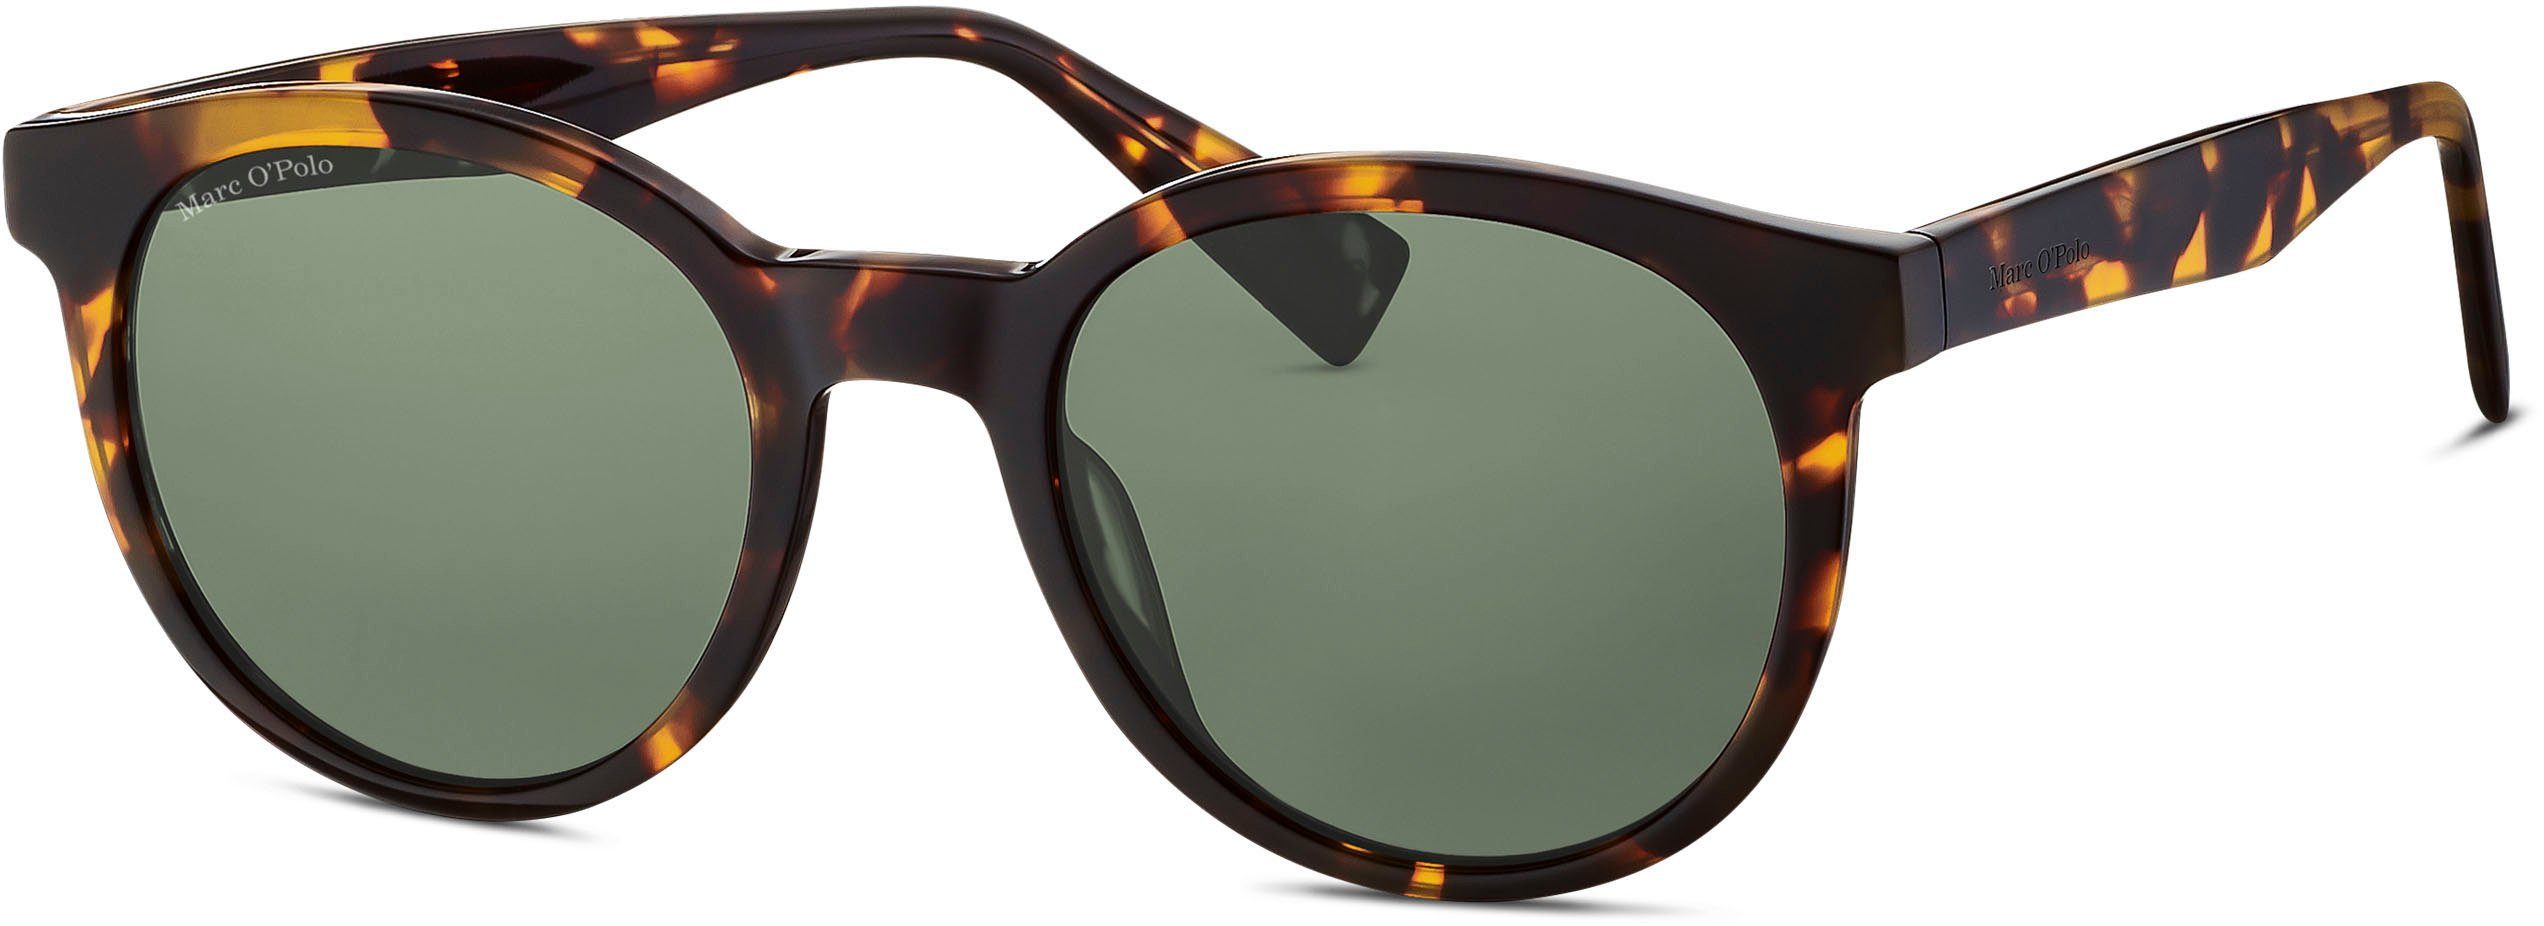 Marc O'Polo Sonnenbrille braun-grün Panto-Form Modell 506185